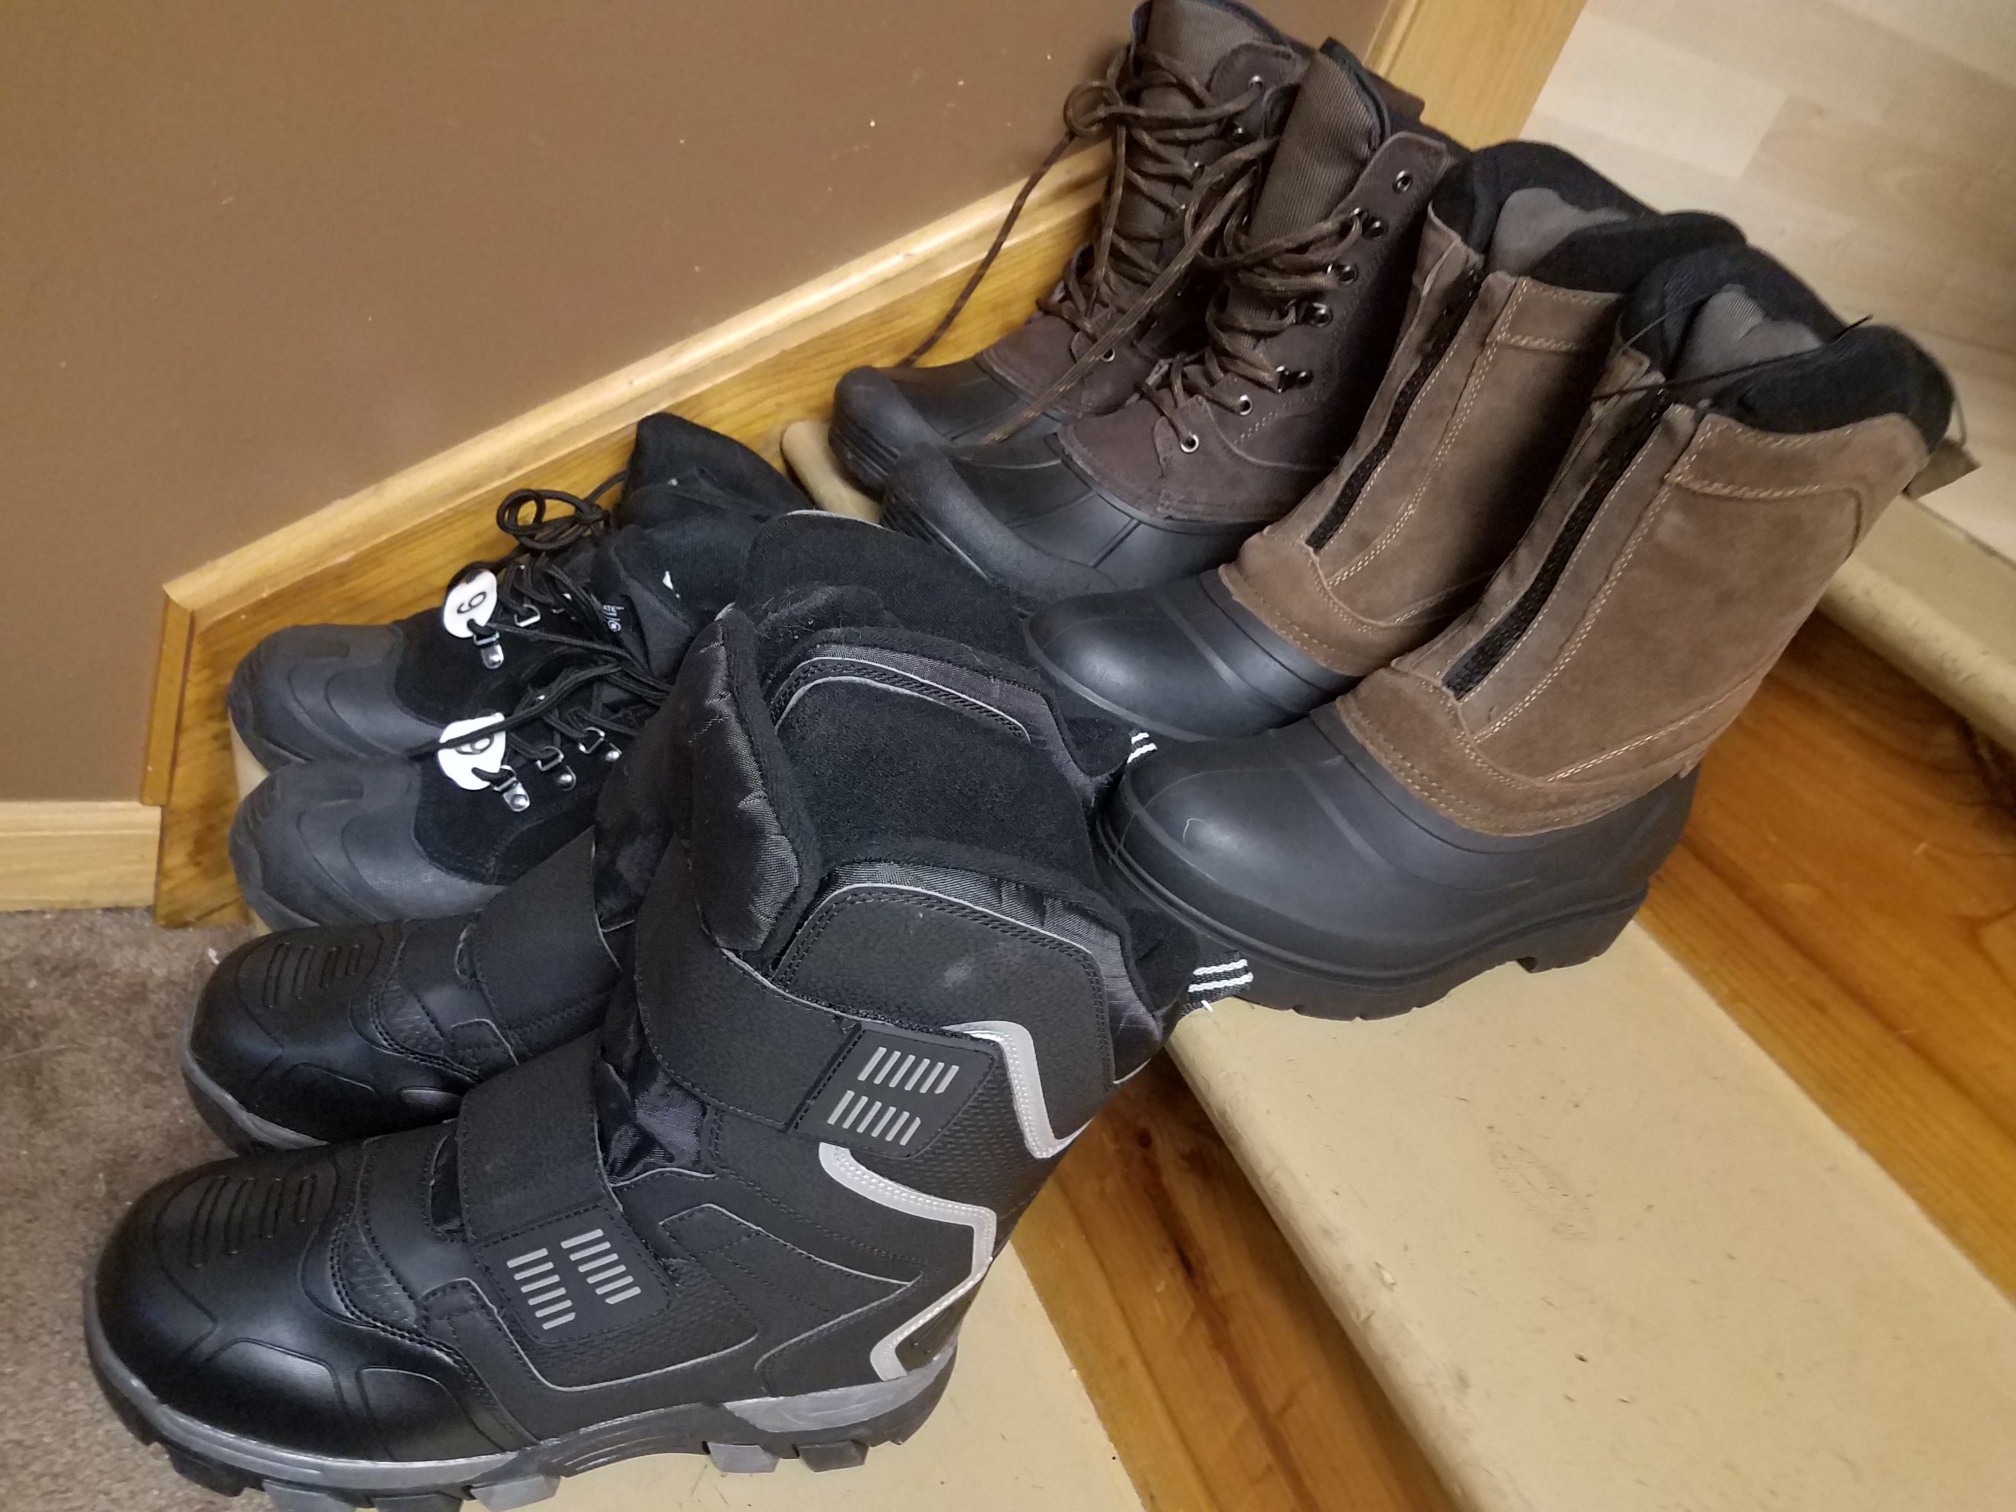 $5.50 Men&#39;s winter boot clearance at Meijer - Jill Cataldo